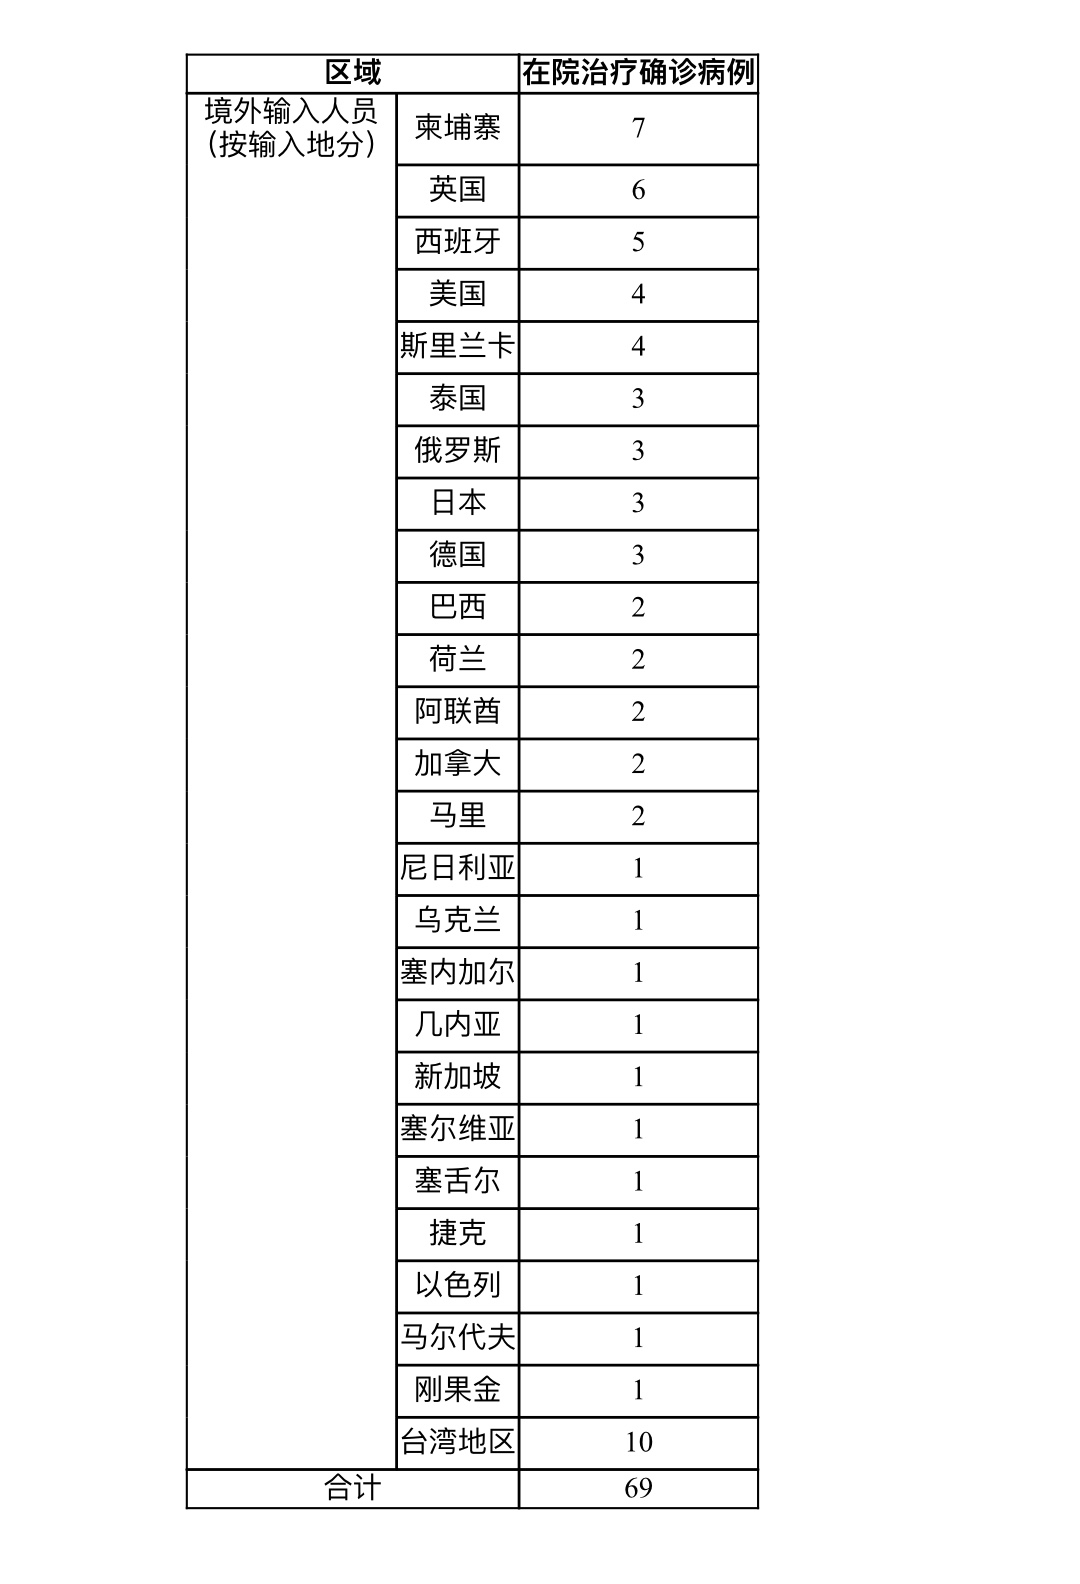 上海16日新增3例境外输入新冠肺炎确诊病例